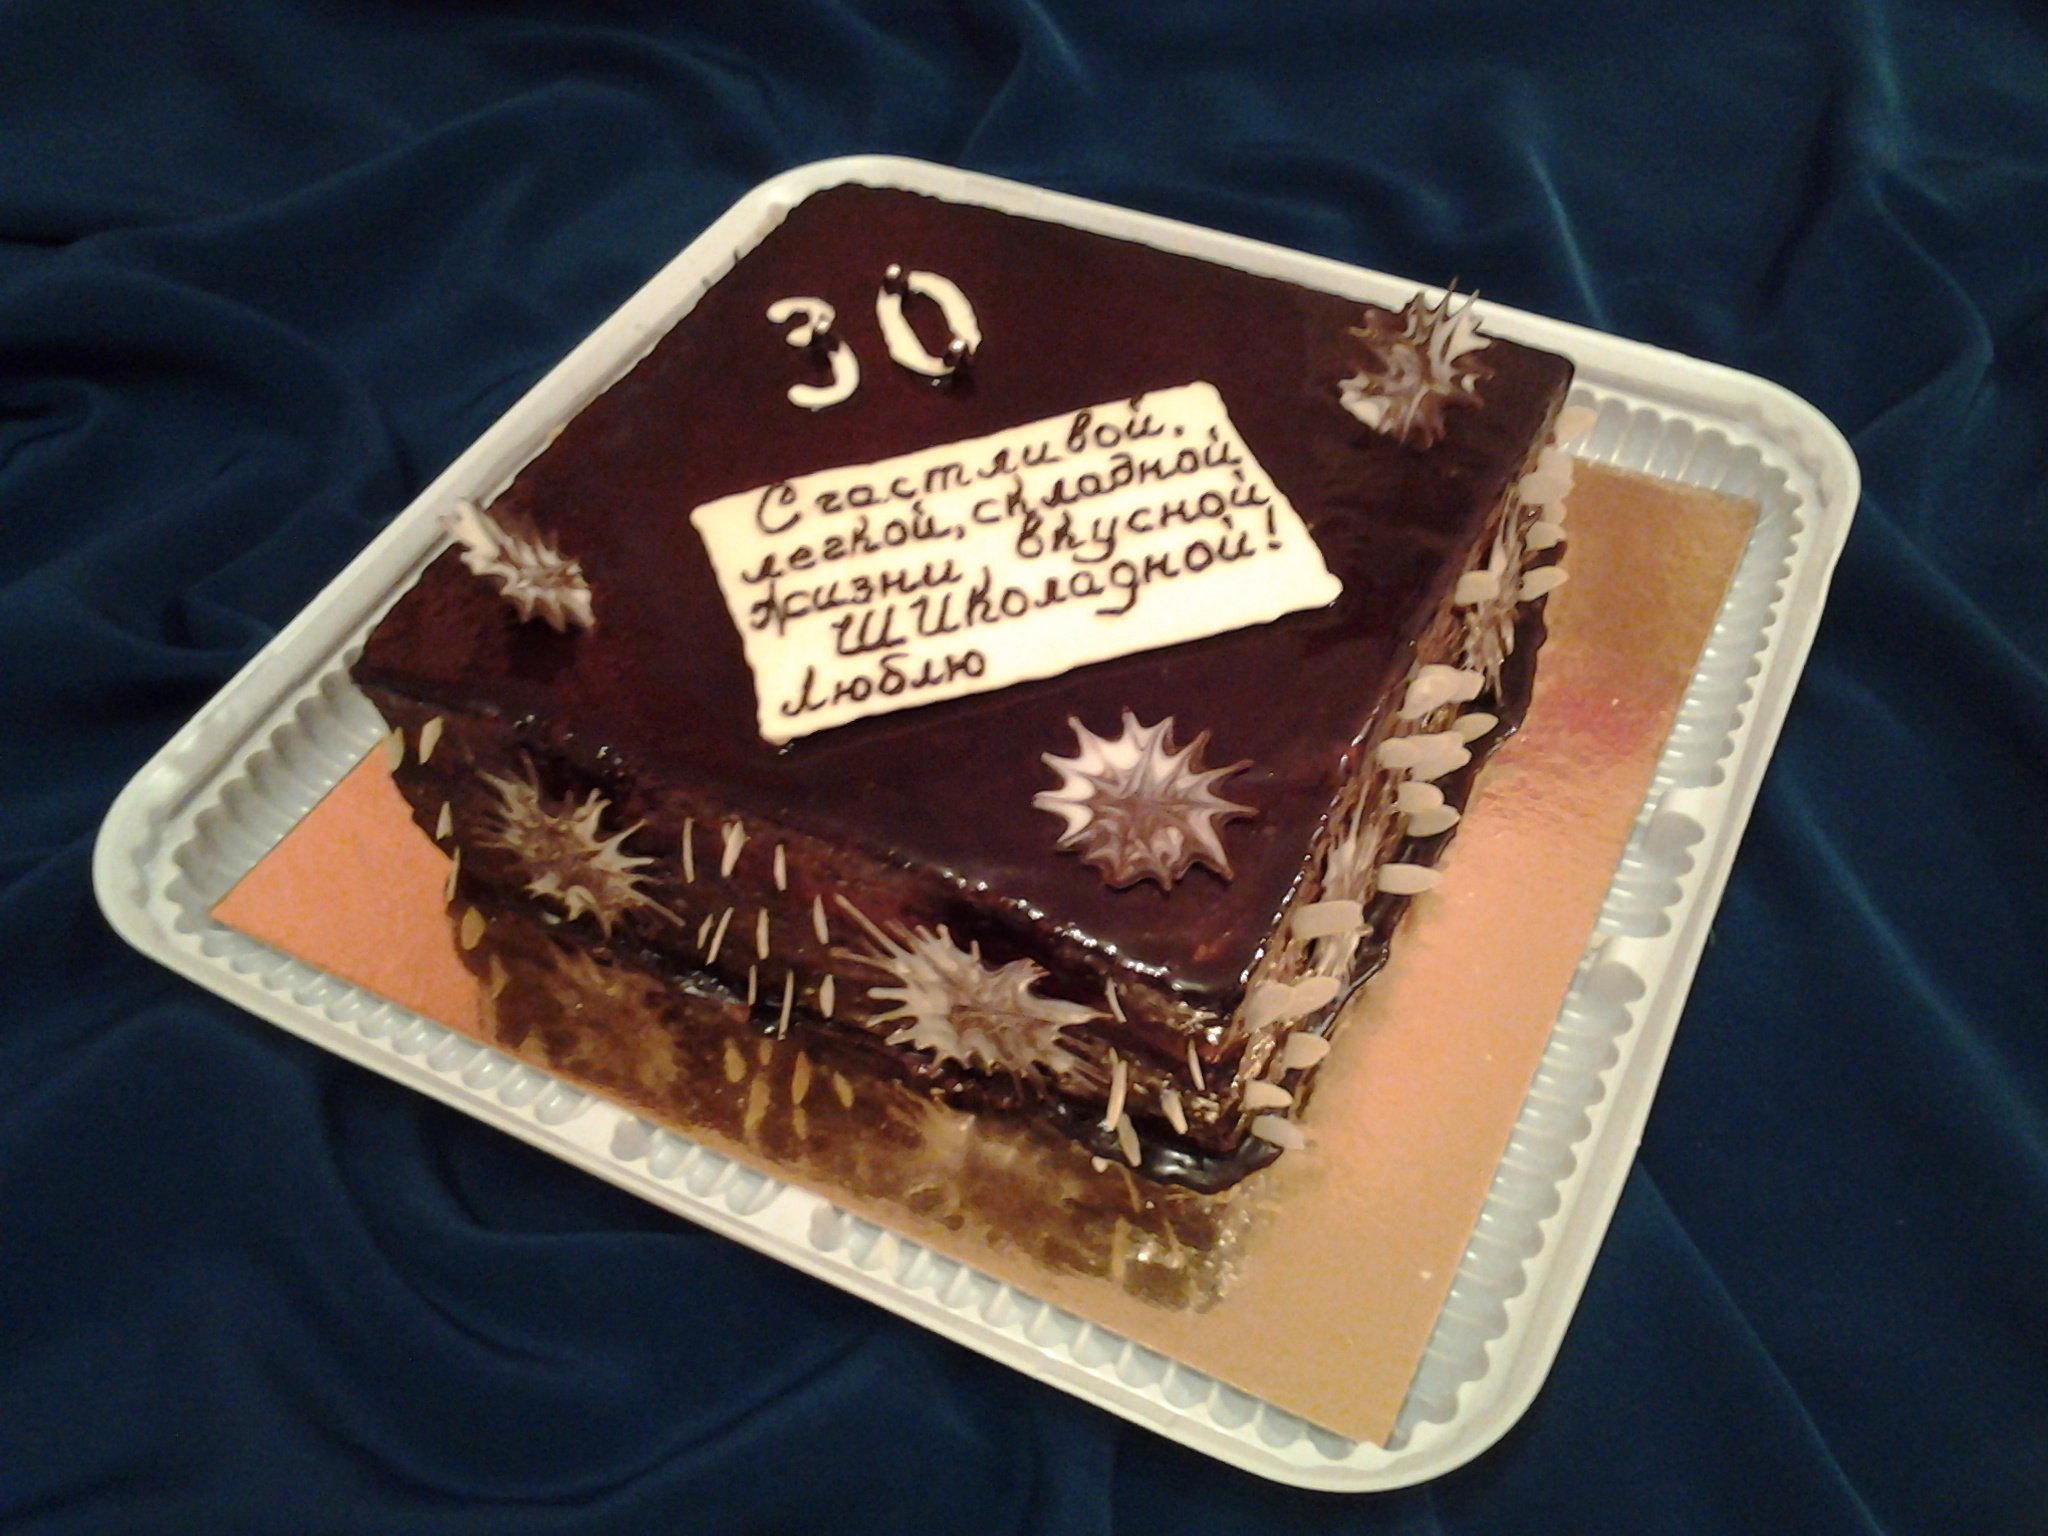 Юбилейный торт для мужчины 25 лет